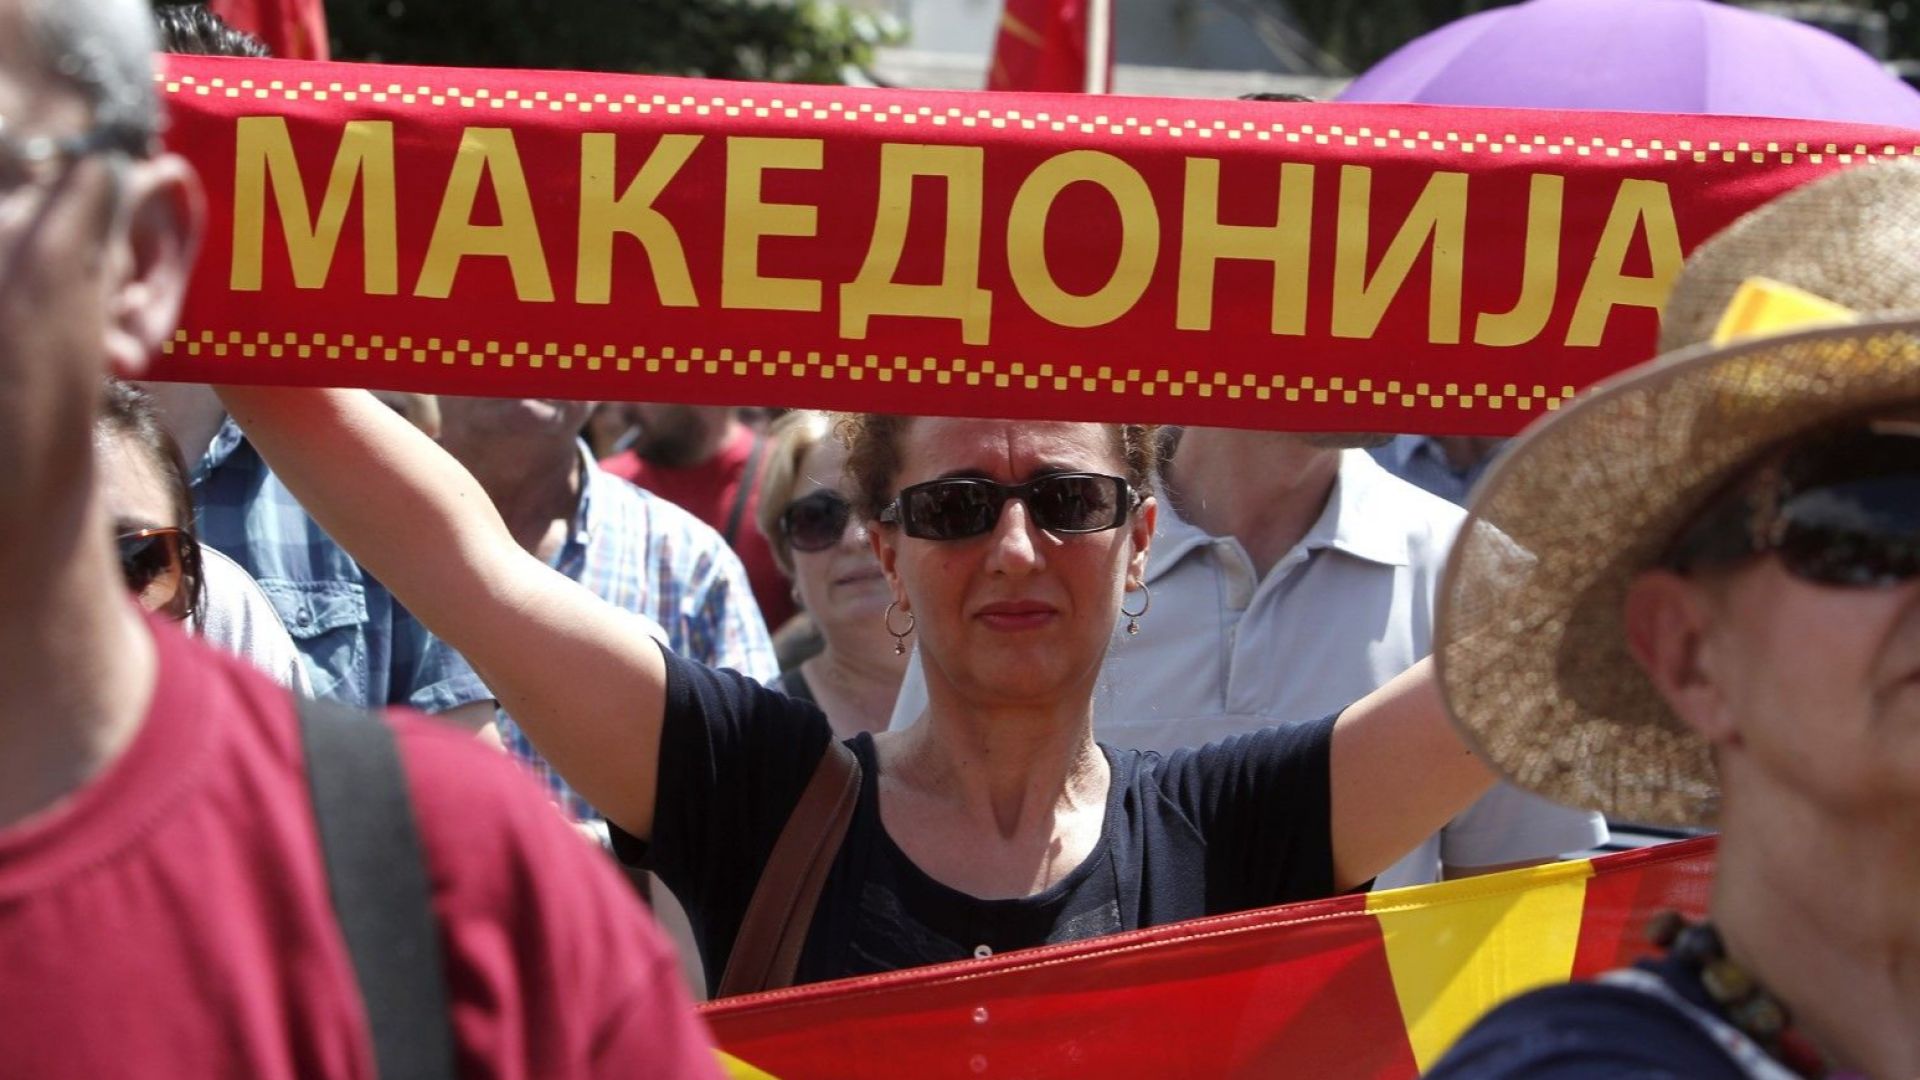 Заев: Македония ще влезе гордо в НАТО и ЕС, време е за решение!